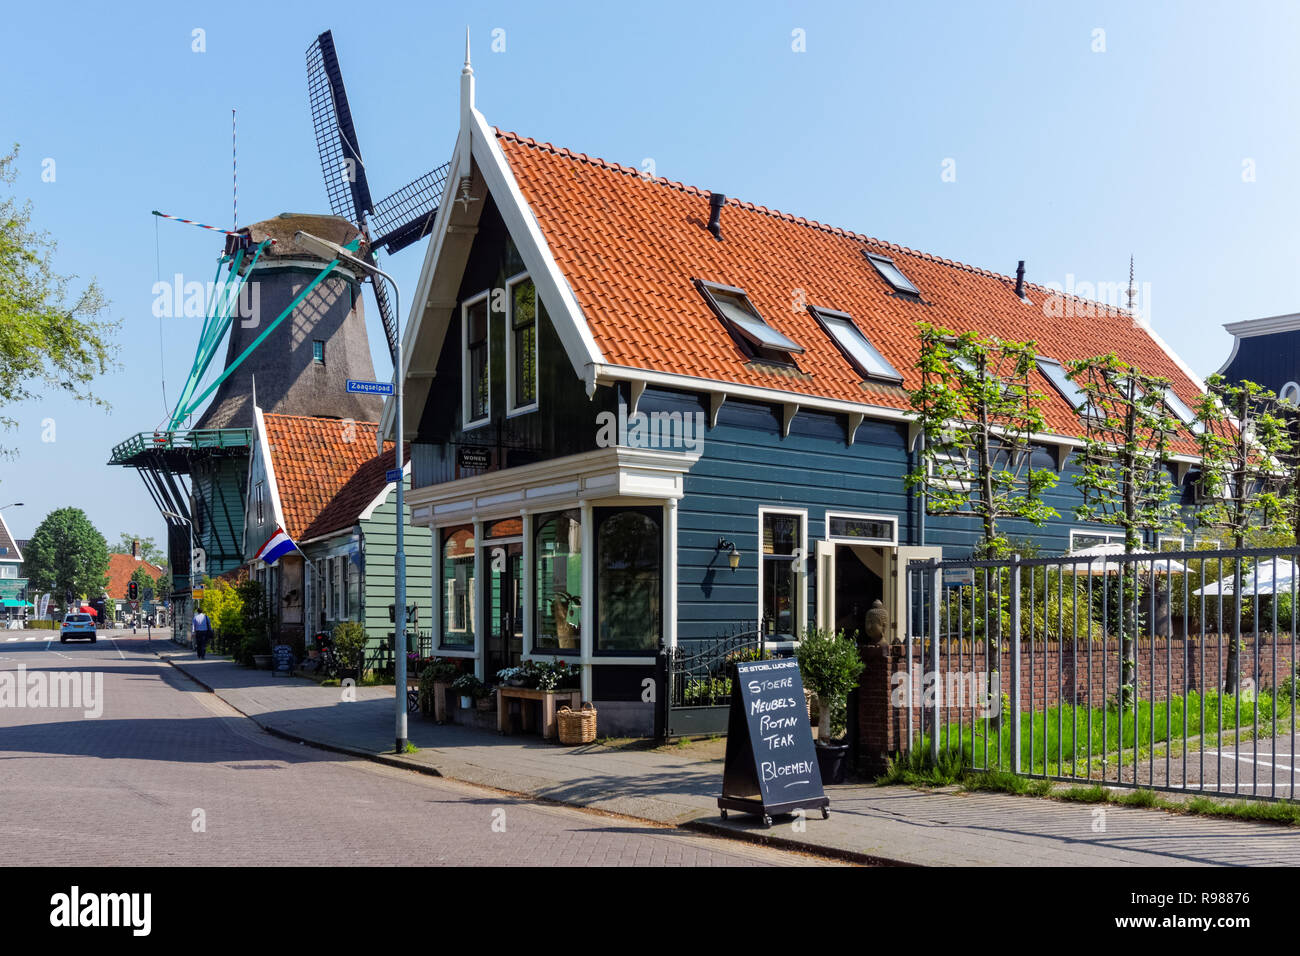 Holländische Windmühle in Zaanse Schans in Niederlande Stockfoto